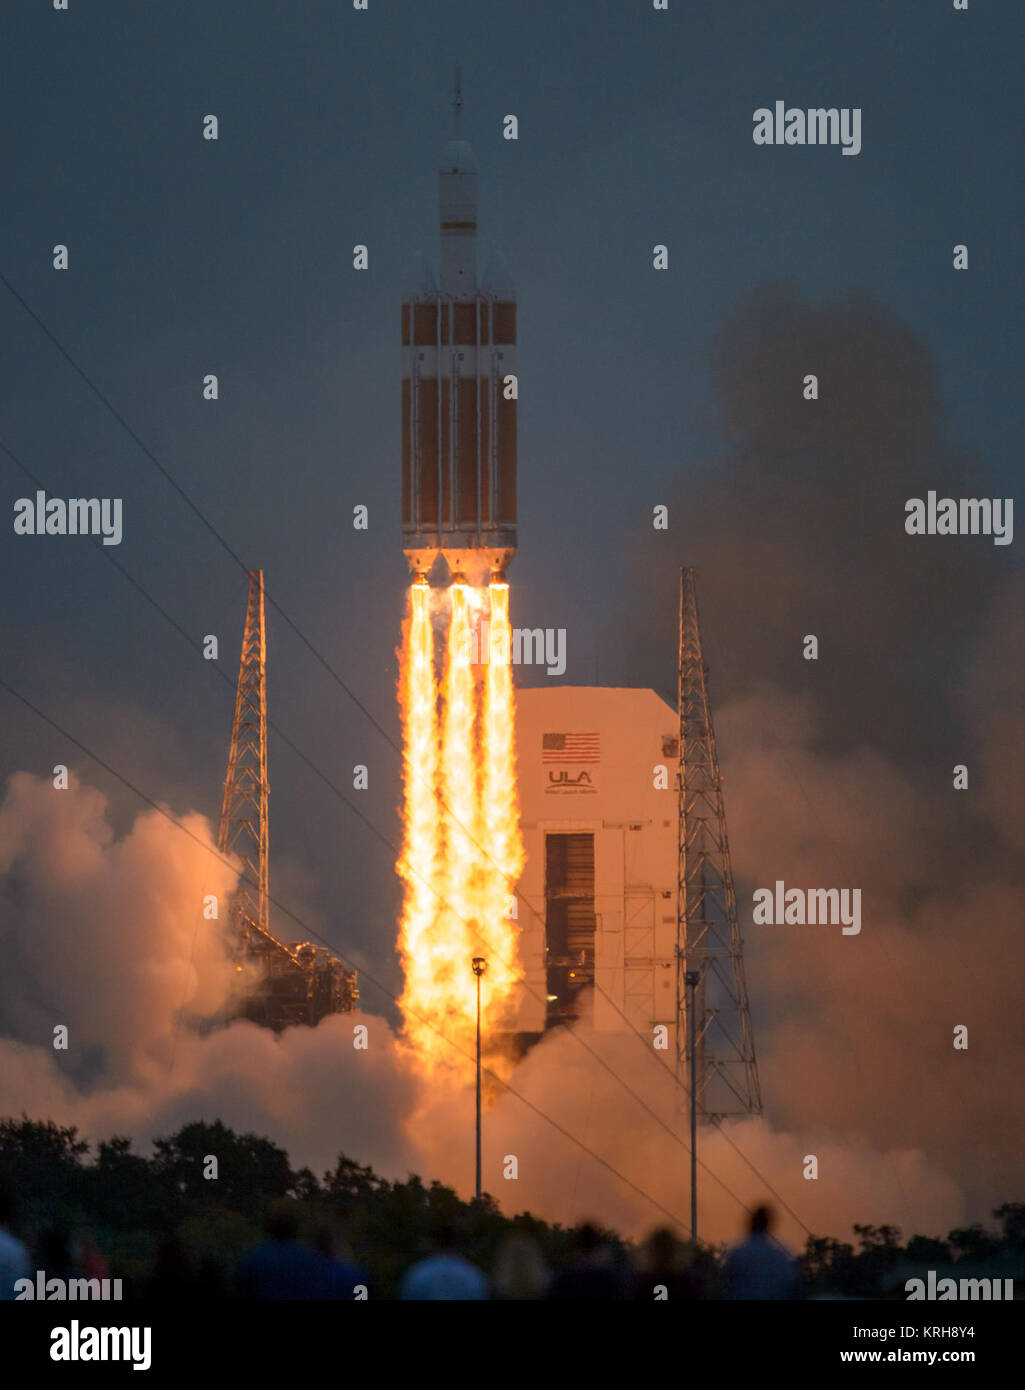 Die United Launch Alliance Delta IV Heavy Rakete mit der NASA-Raumsonde Orion montiert auf, hebt ab von Cape Canaveral Air Force Station Raum Komplex 37 Start um 7:05 Uhr EST, Freitag, Dezember 5, 2014, in Florida. Die Orion Raumsonde in eine Umlaufbahn Erde zweimal und erreicht eine Höhe von ungefähr 3.600 Meilen über der Erde vor der Landung in den Pazifischen Ozean. Niemand ist an Bord der Orion für diesen Flug testen, aber die Raumsonde ist für uns ein zu einer Reise zu Zielen noch nie von Menschen besucht, darunter ein Asteroid und Mars zu ermöglichen. Photo Credit: (NASA/Bill Ingalls) Orion Weltraum. Stockfoto